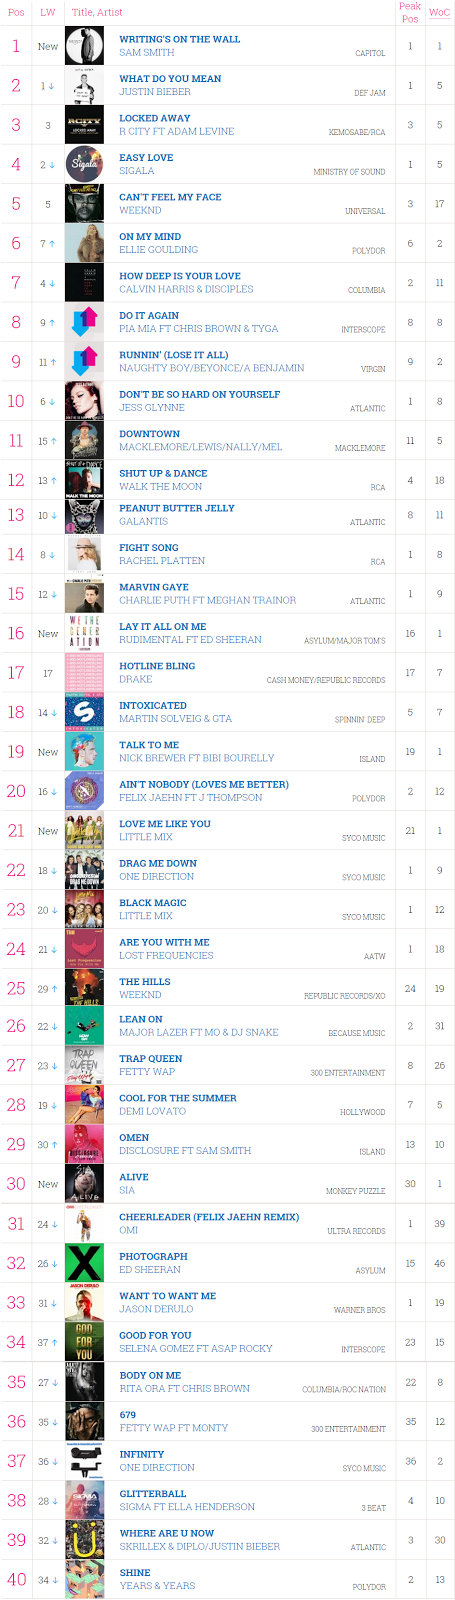 Uk Top 40 Singles Chart This Week